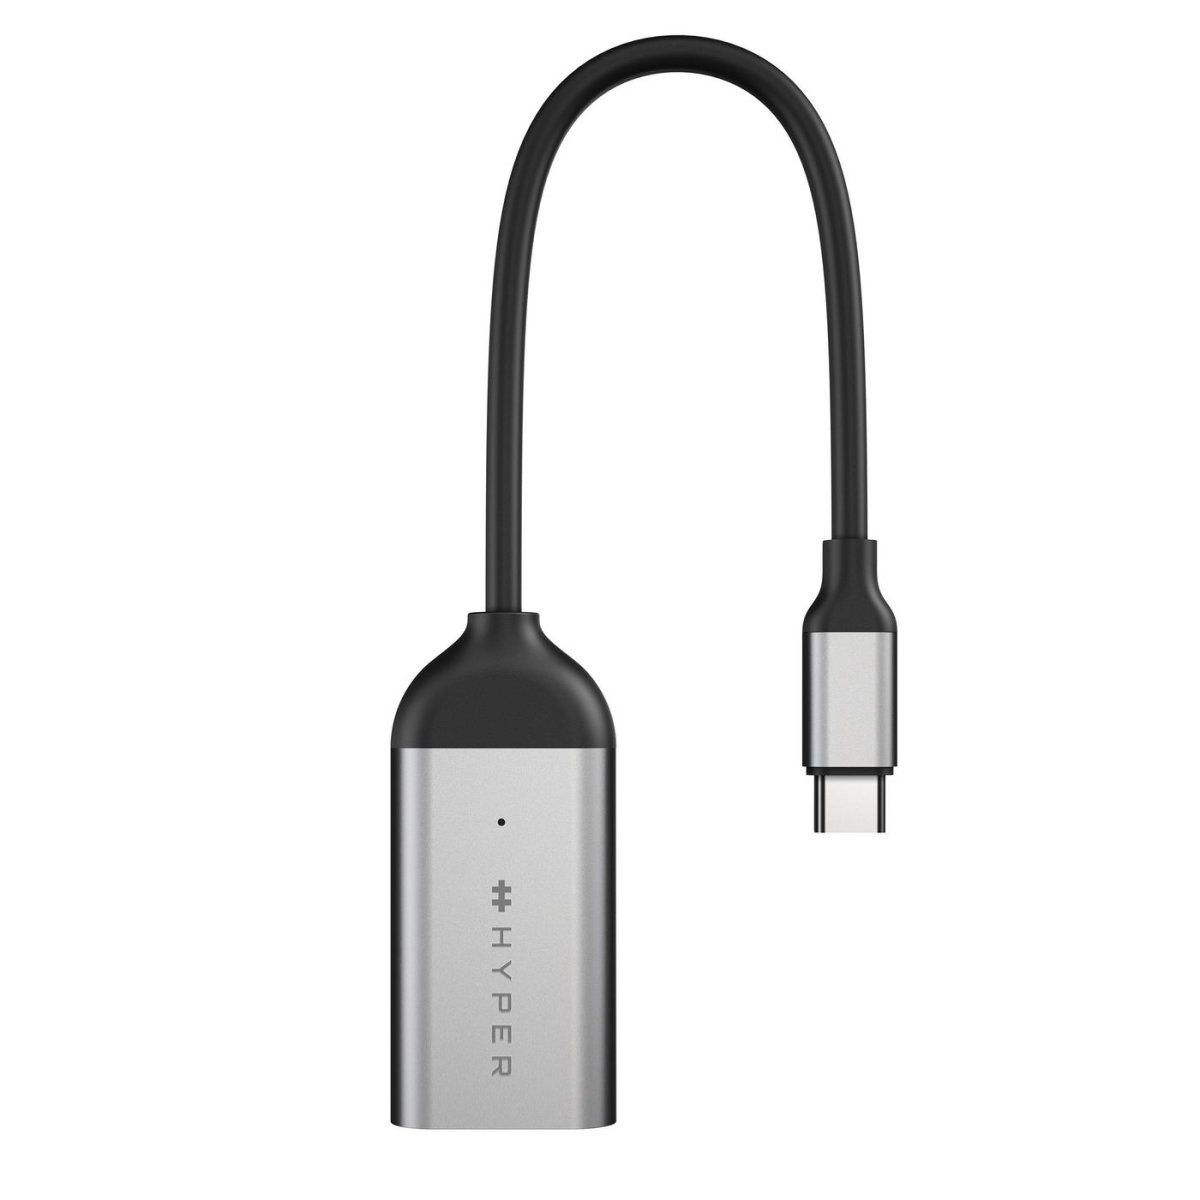 Hyper USB-C till 8K HDMI-adapter